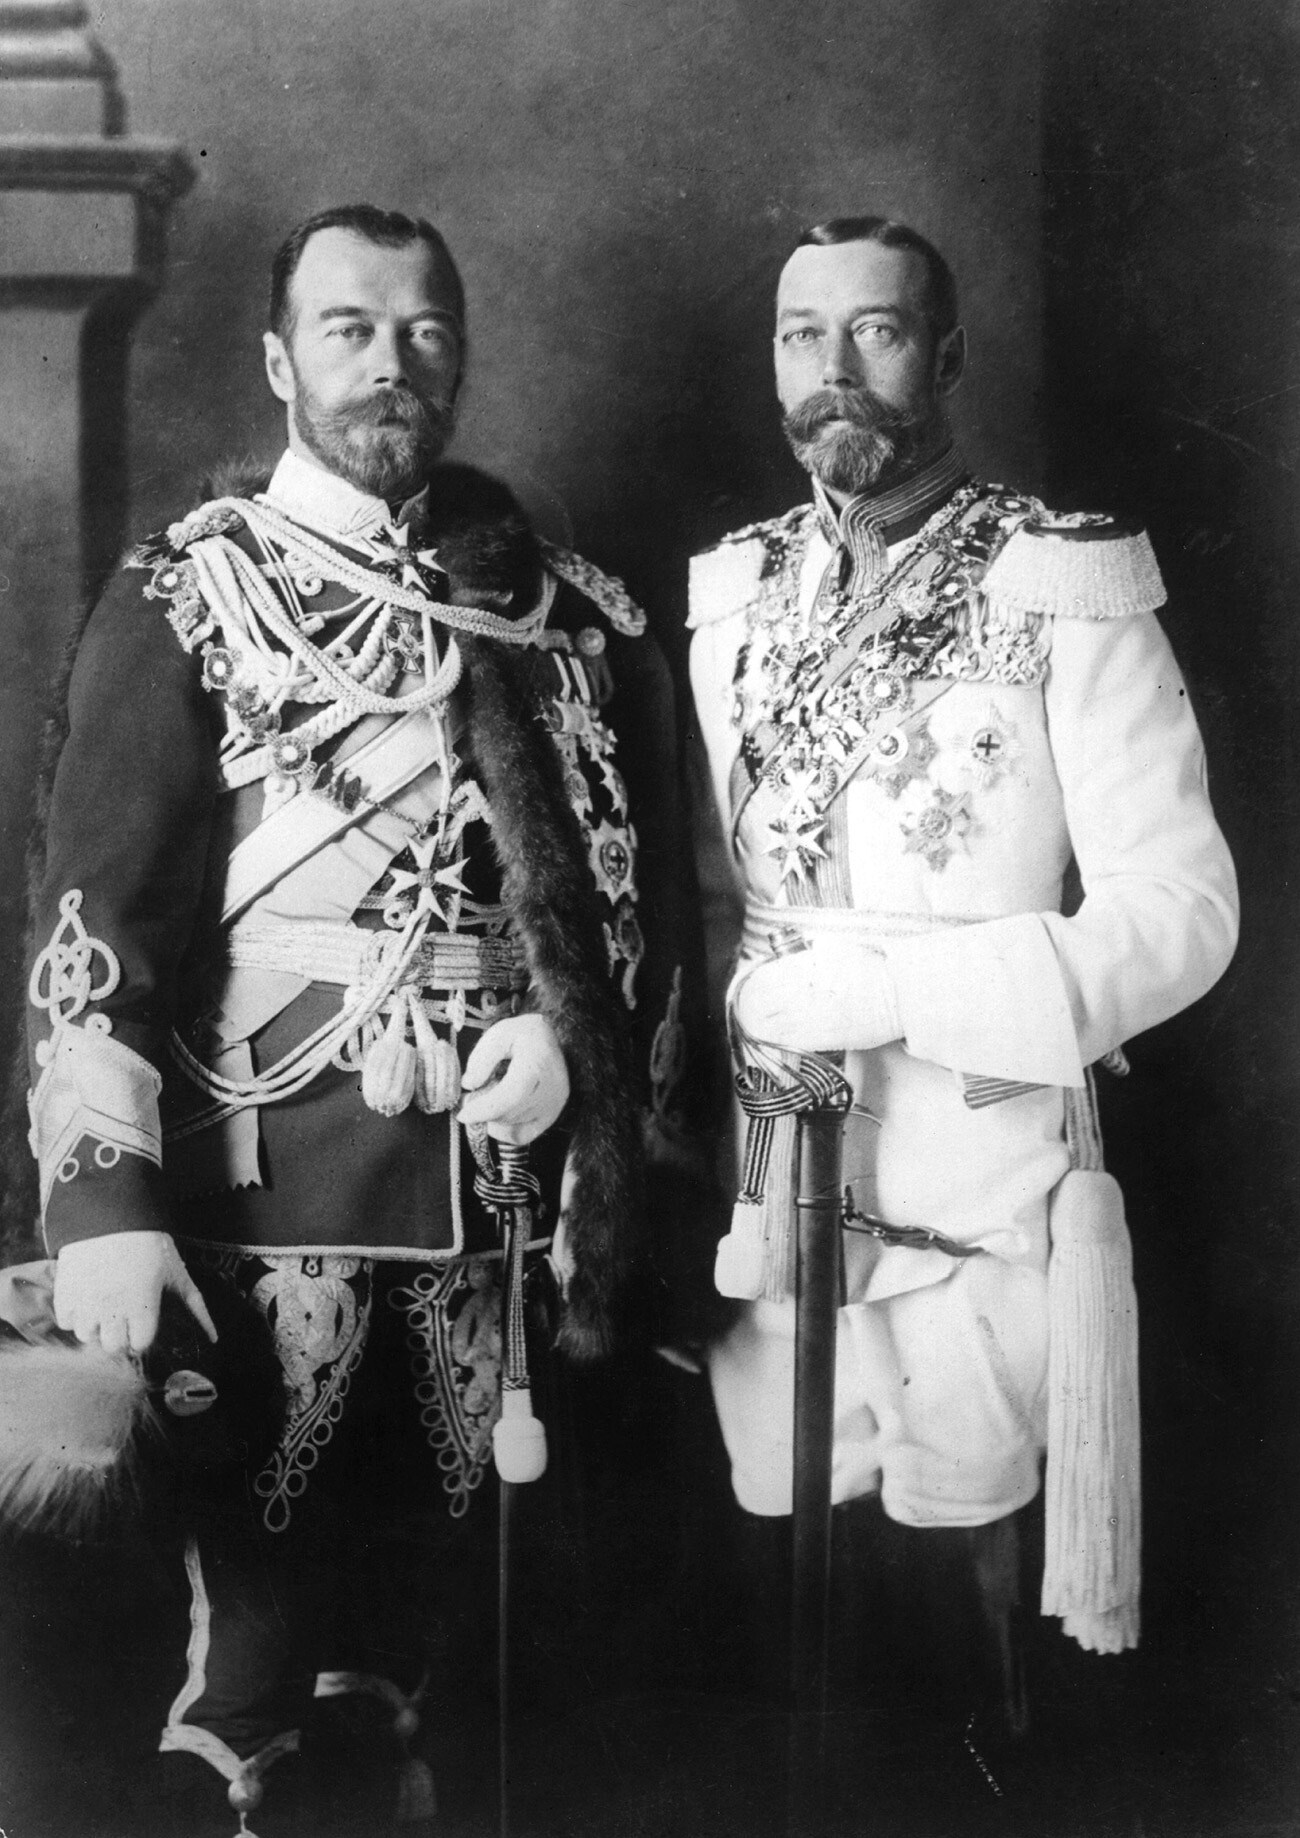 Ruski cesar Nikolaj II. s svojim fizično podobnim bratrancem, kraljem Združenega kraljestva Jurijem V. (desno), v nemških vojaških uniformah v Berlinu pred vojno; 1913 